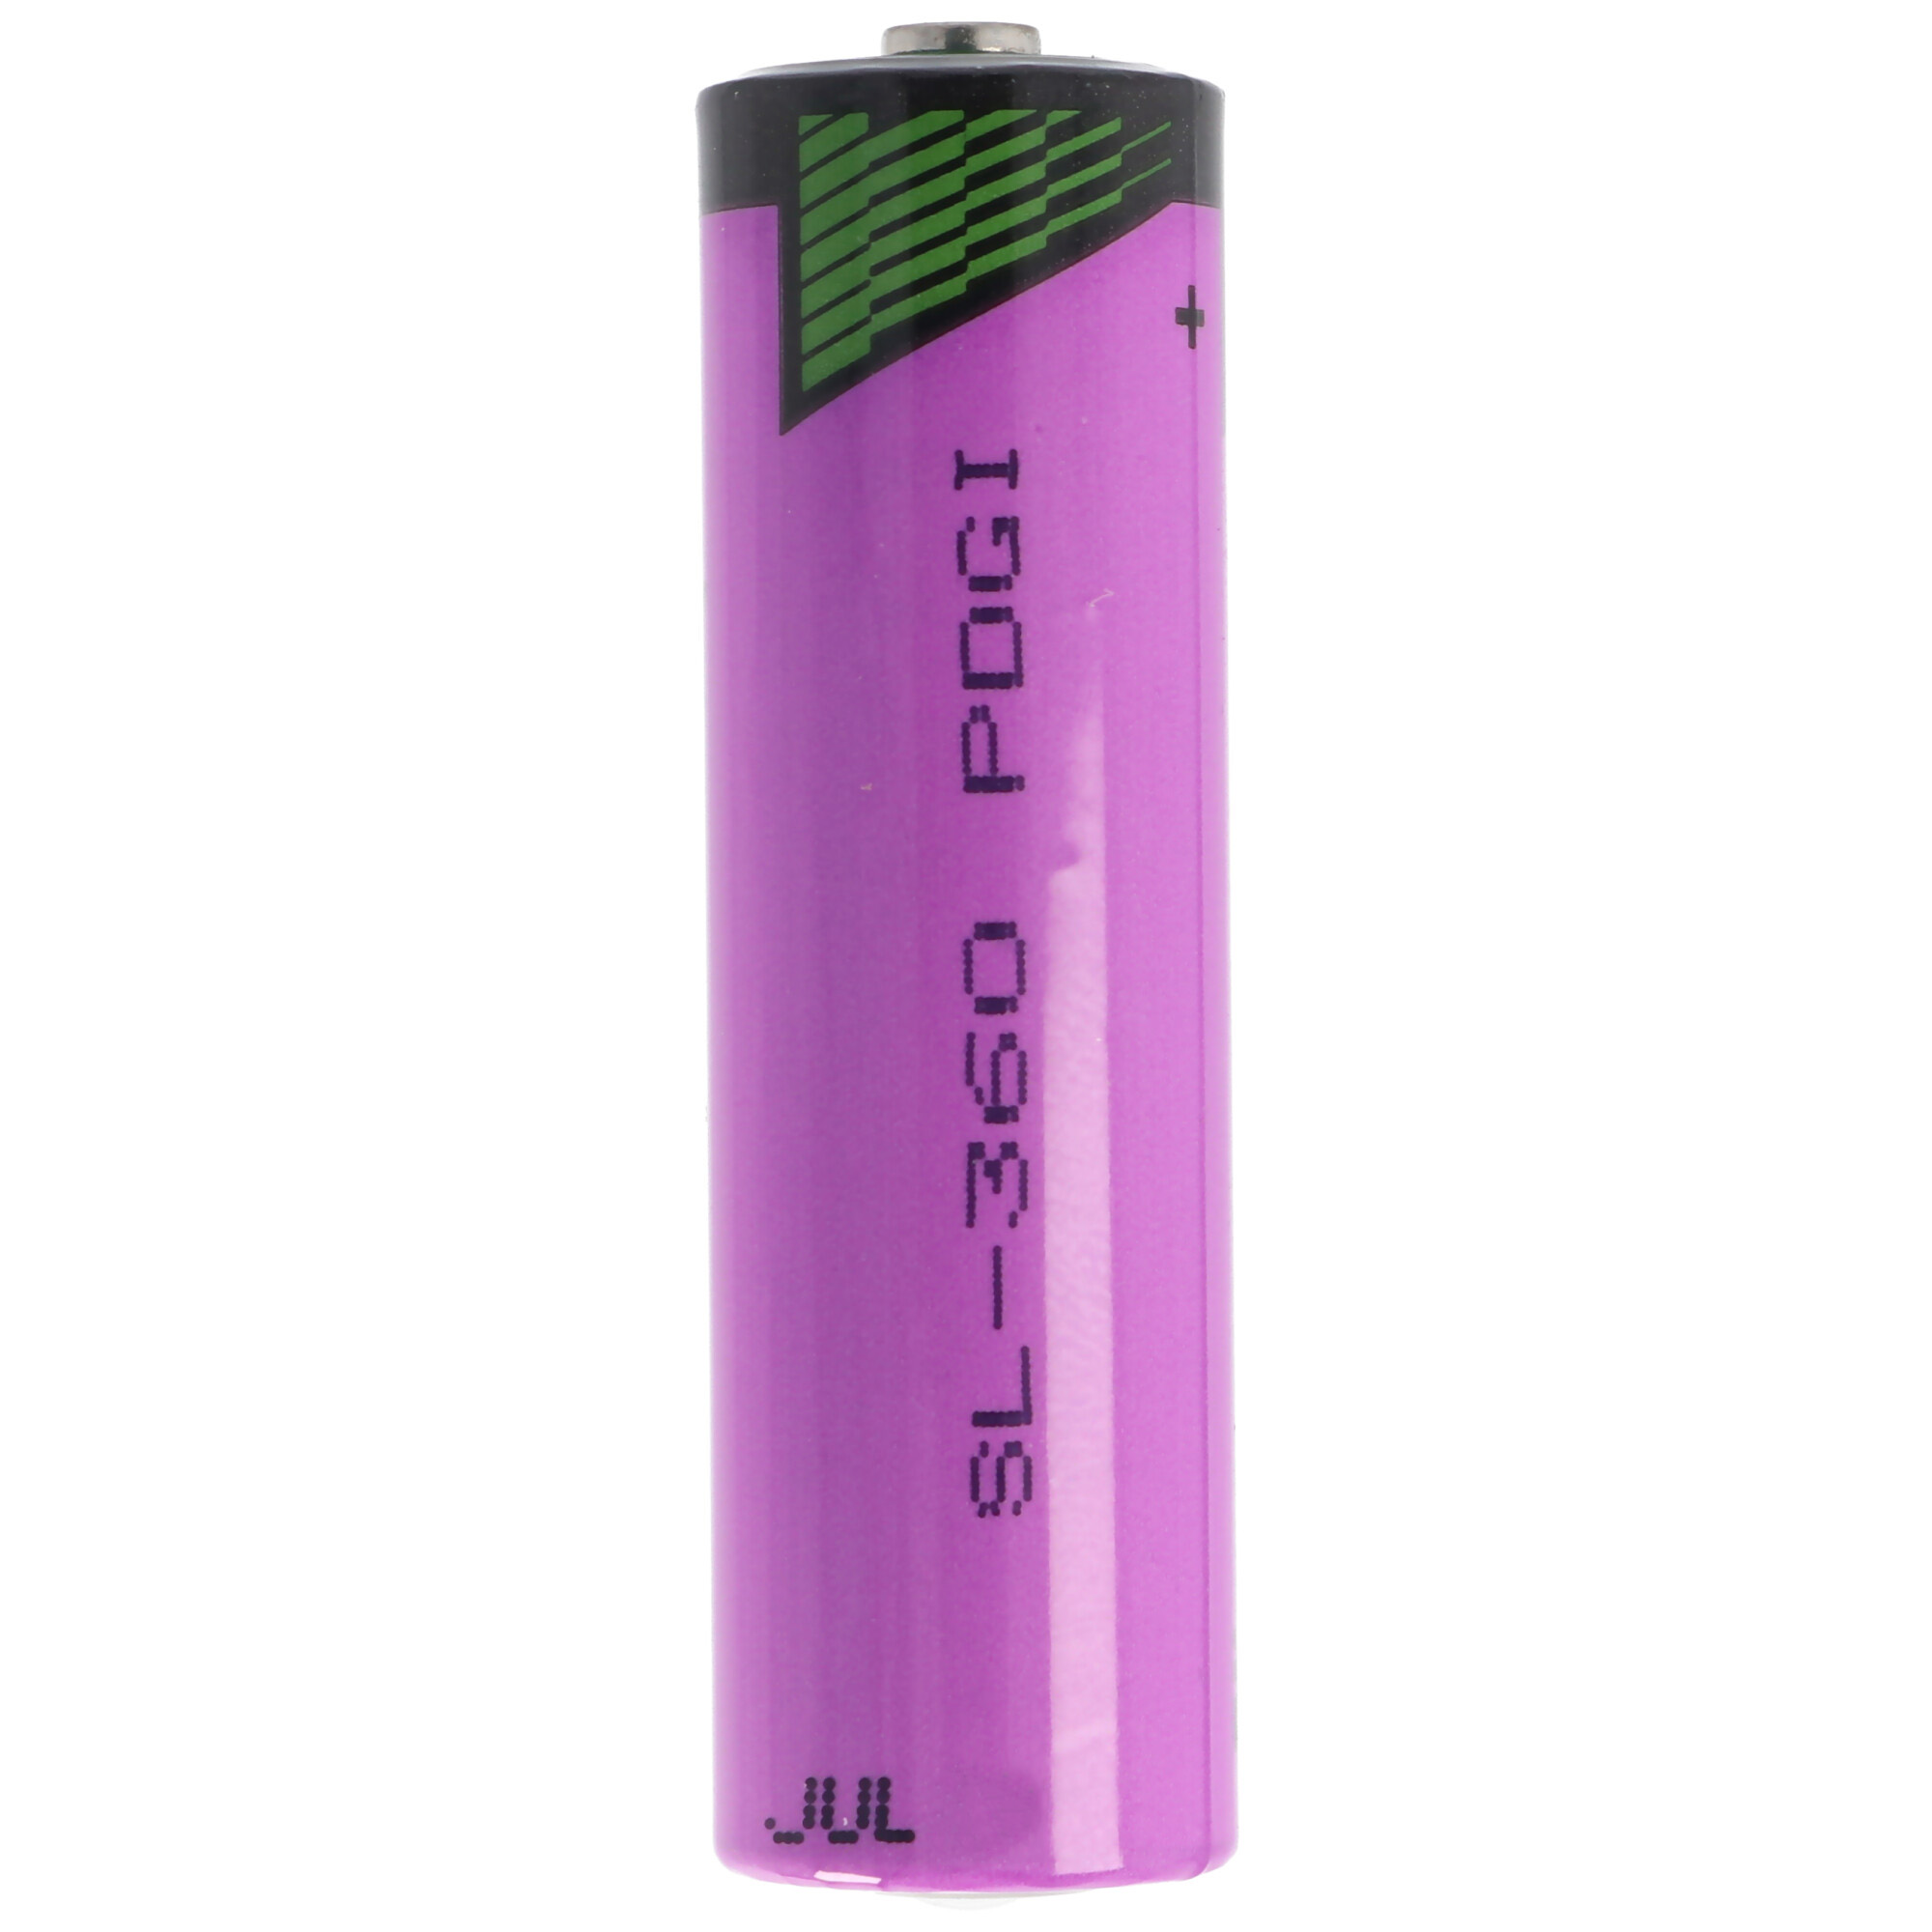 Sonnenschein Inorganic Lithium Battery SL-360/S Standard